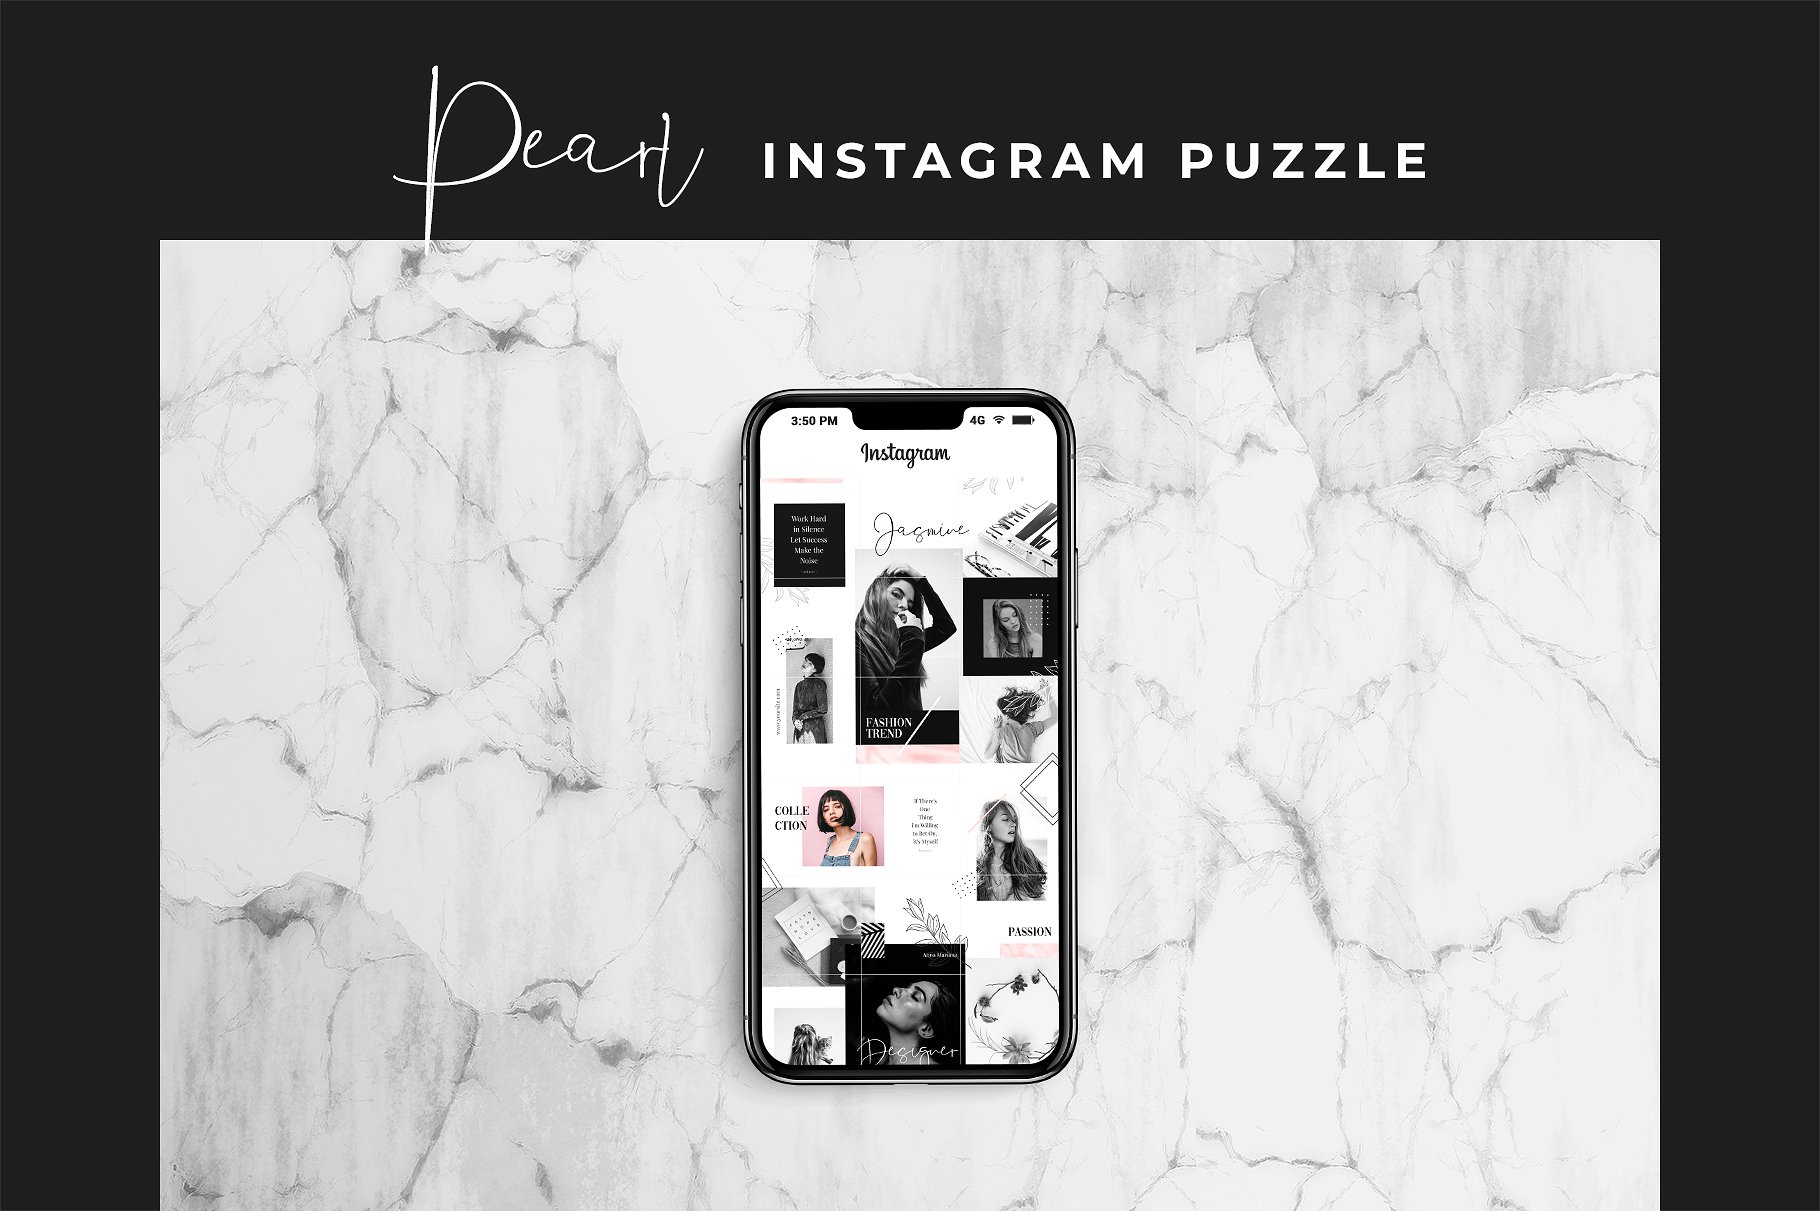 现代黑色主题的instagram社交媒体模板第一素材精选 Instagram Puzzle – Pearl [psd]插图(3)